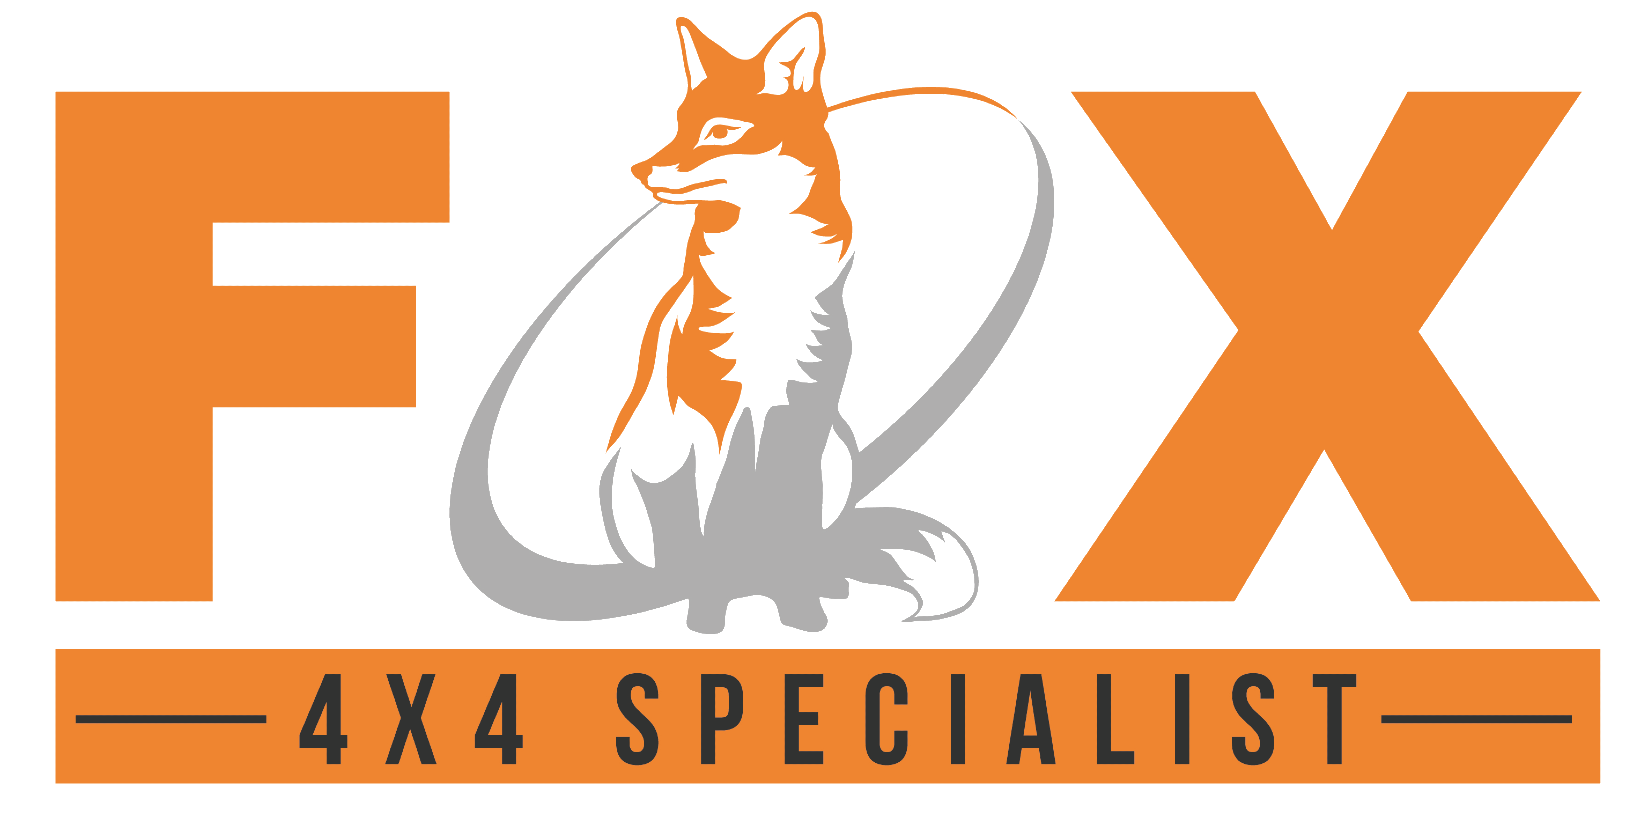 Premier Car Company 4x4 Specialist Ltd T/A Fox 4x4 Specialist Logo